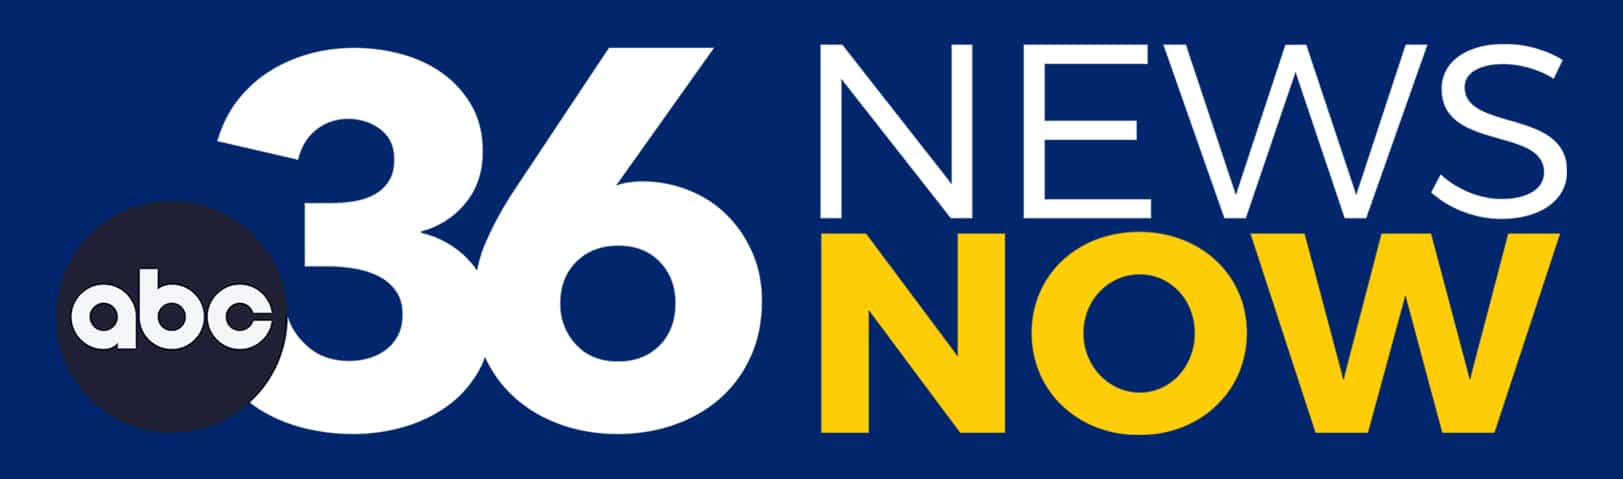 ABC36 New Logo CMYK